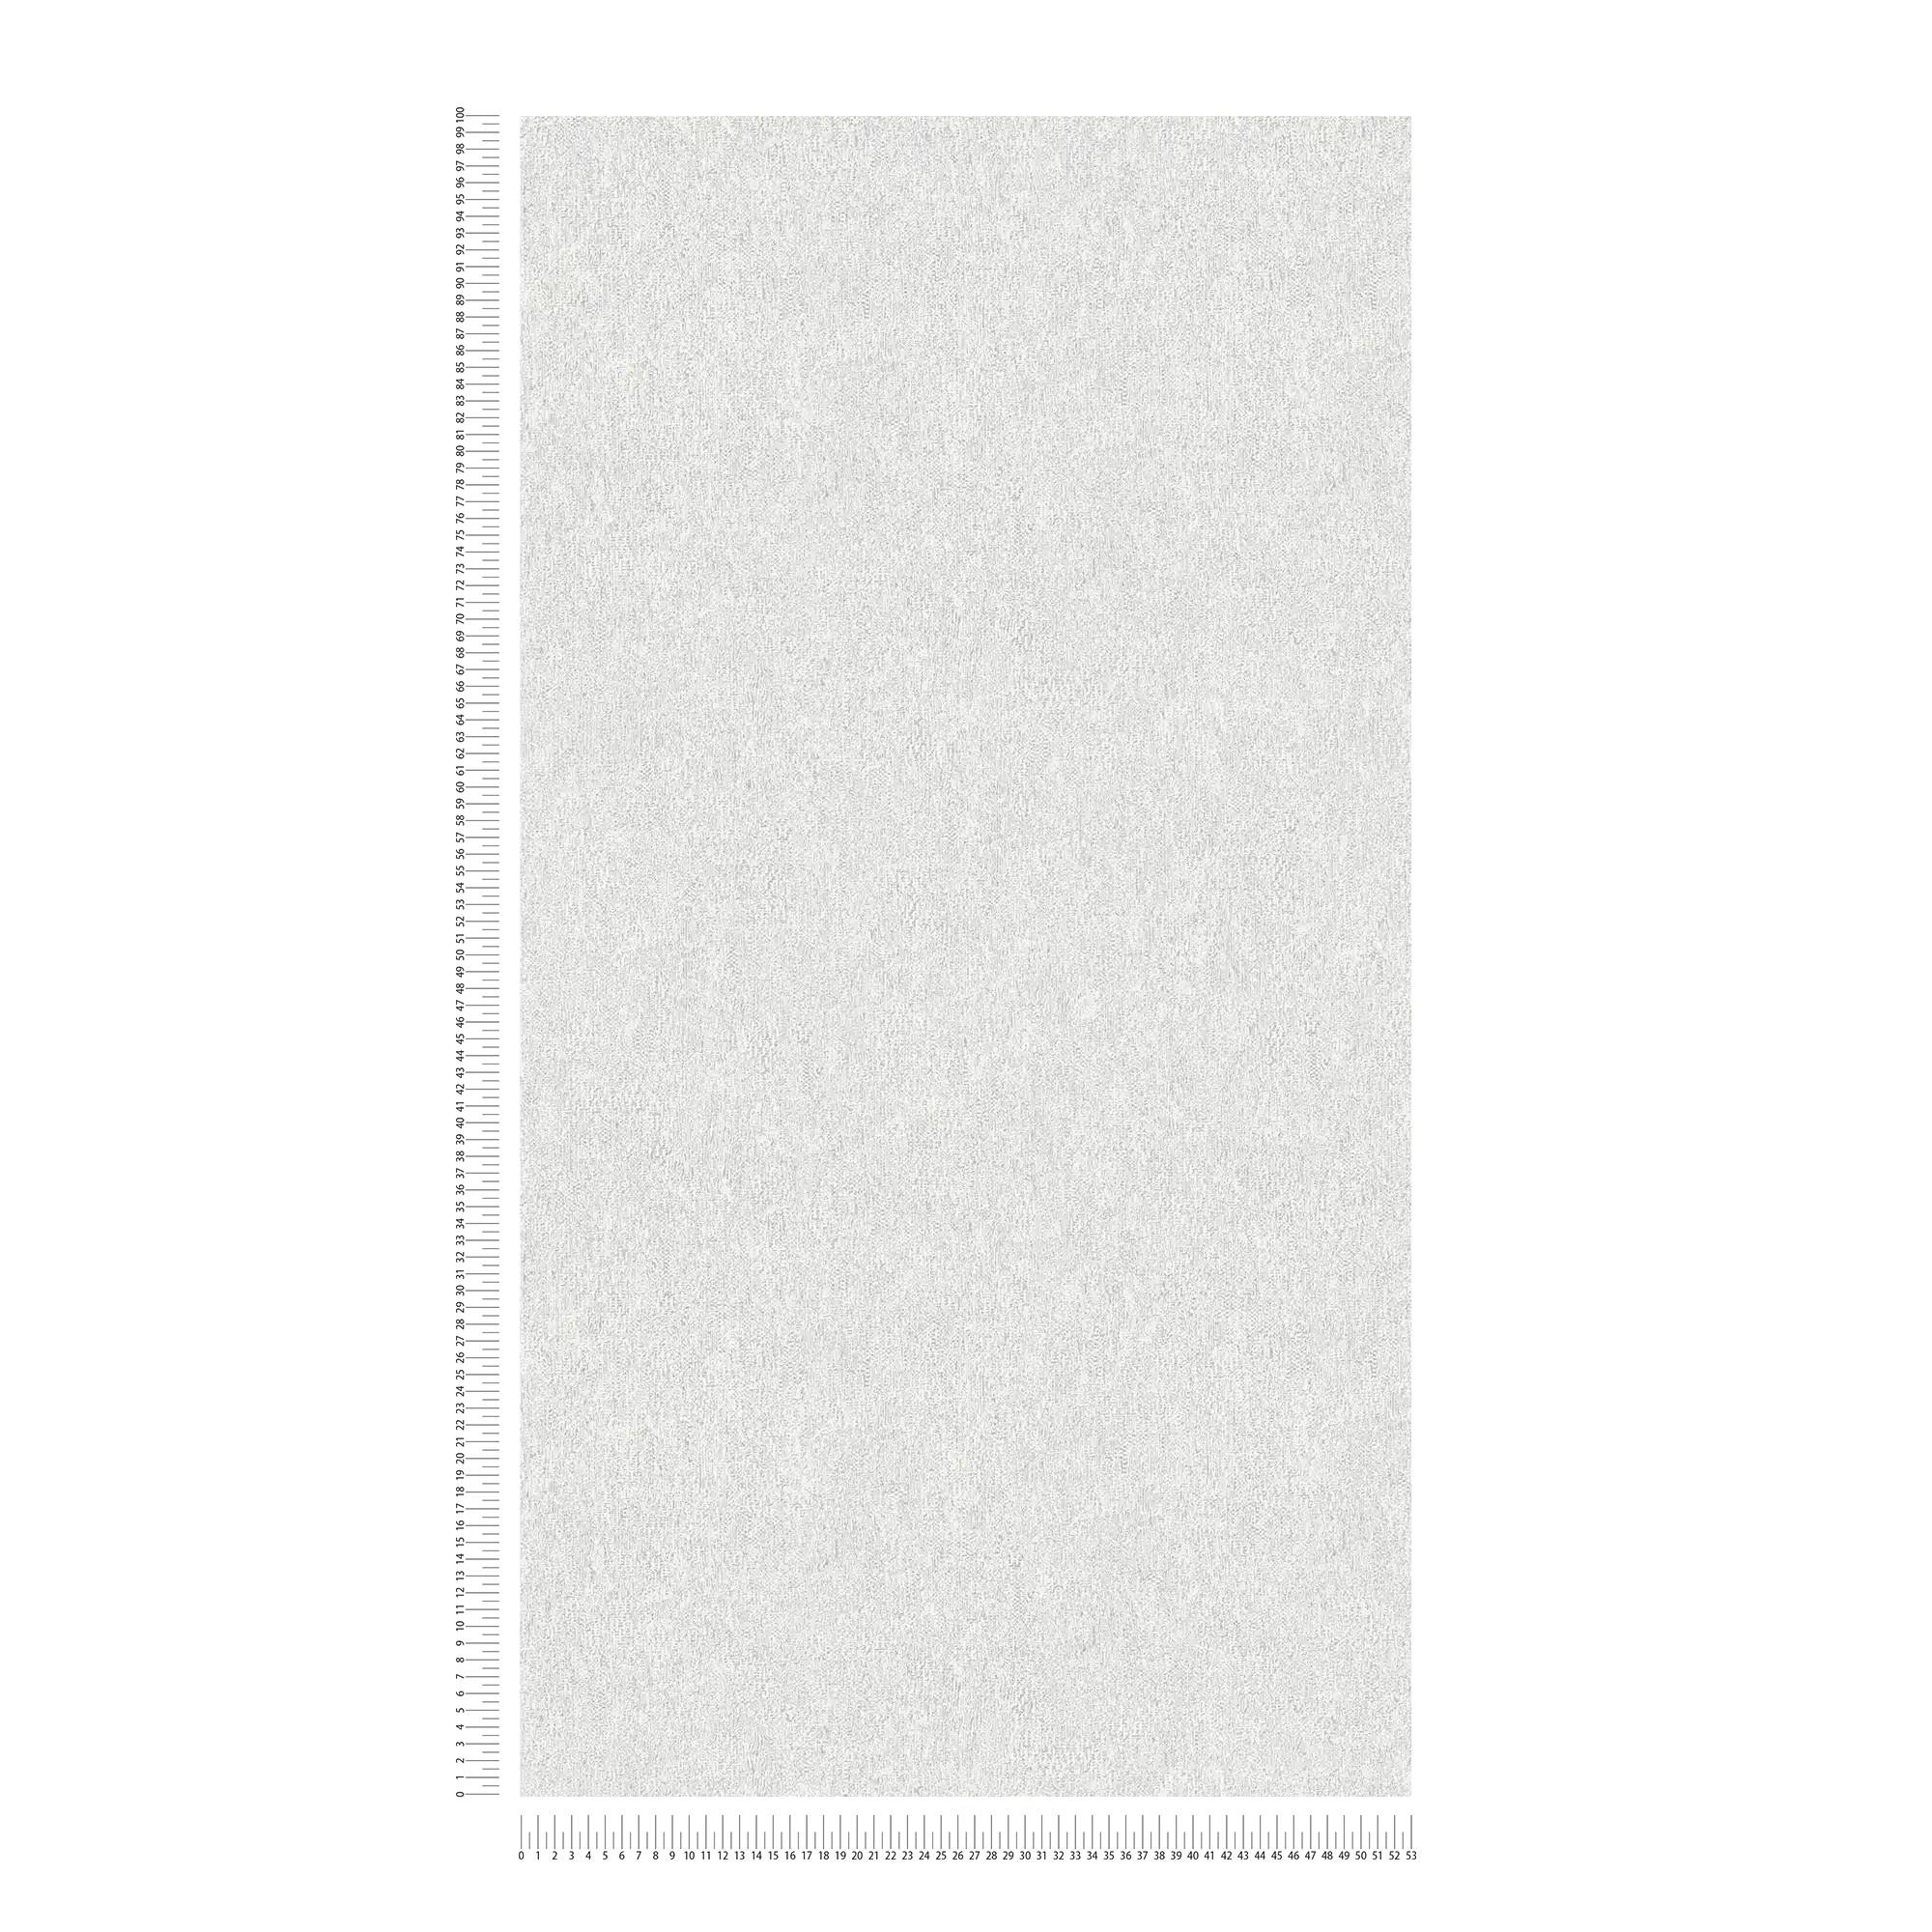             Papier peint intissé mat à effet structuré - gris clair, argenté
        